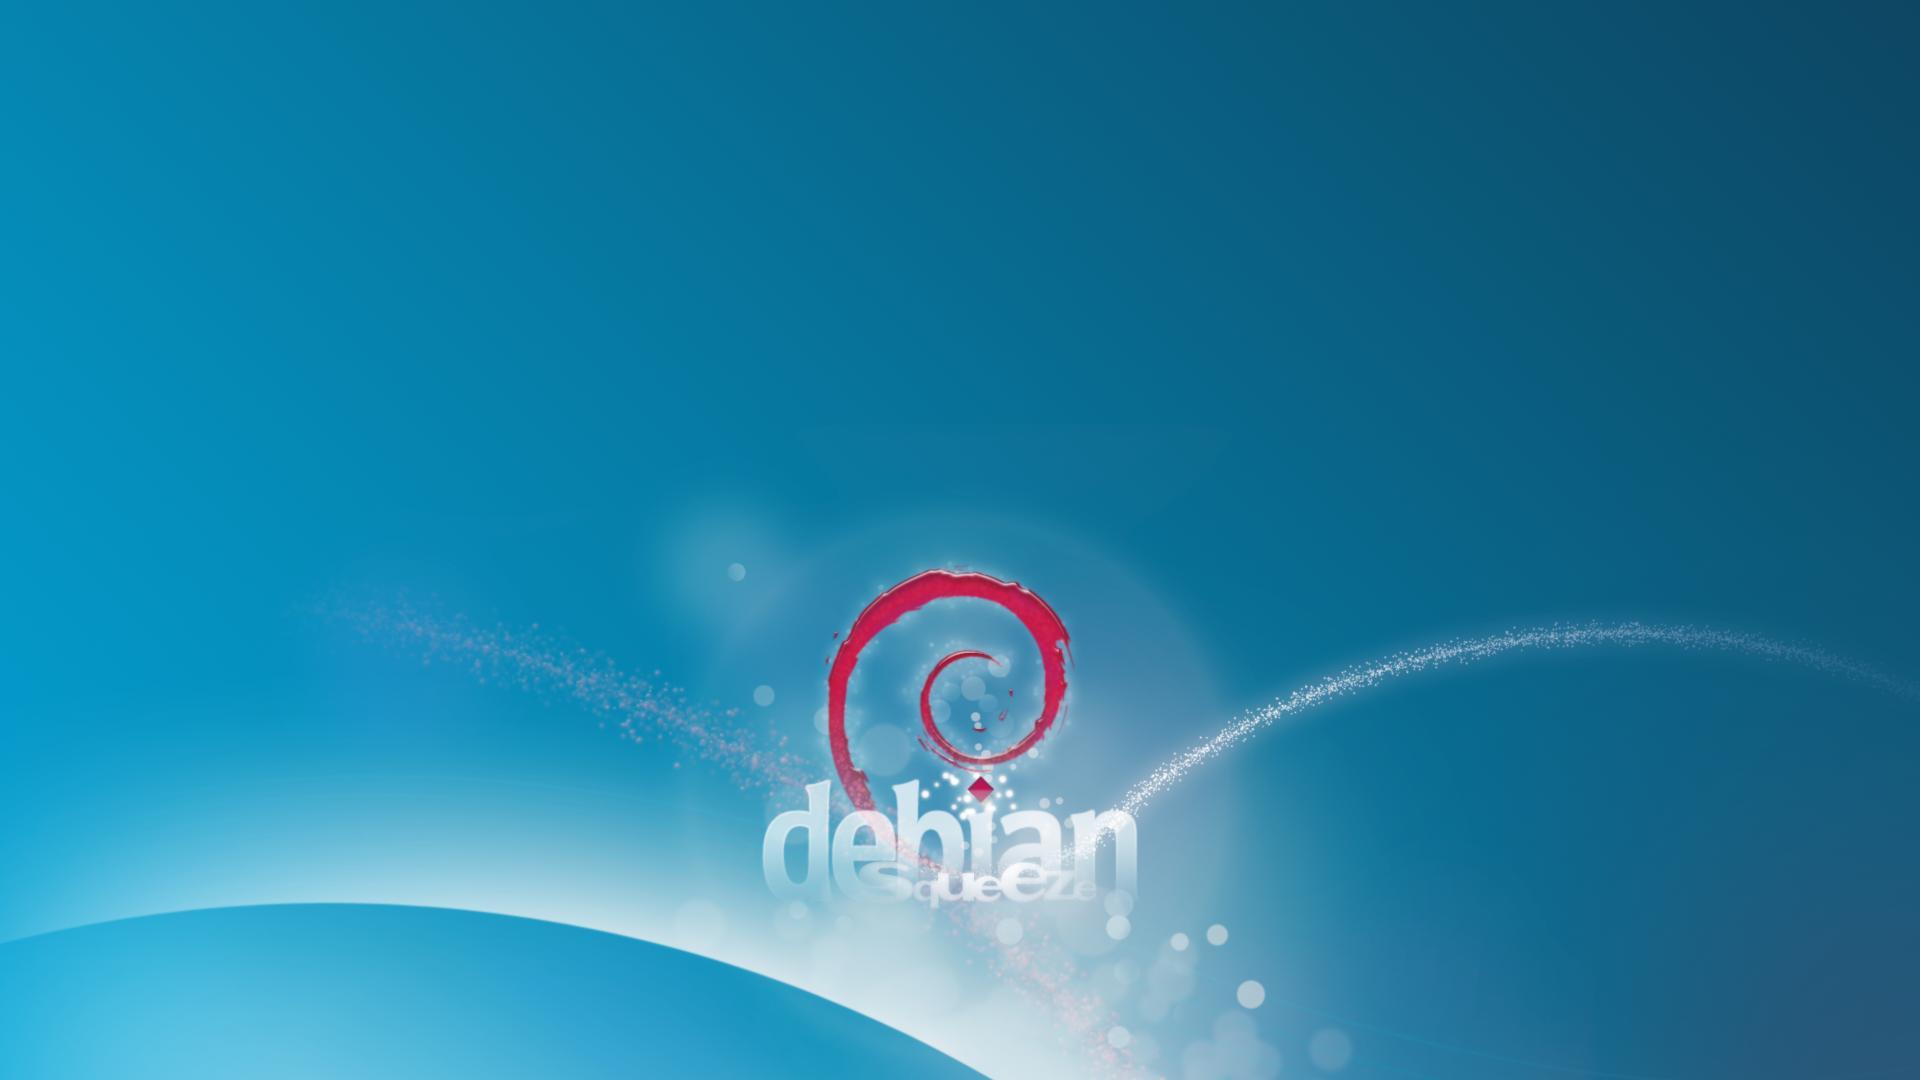 Debian Squeeze wallpaper